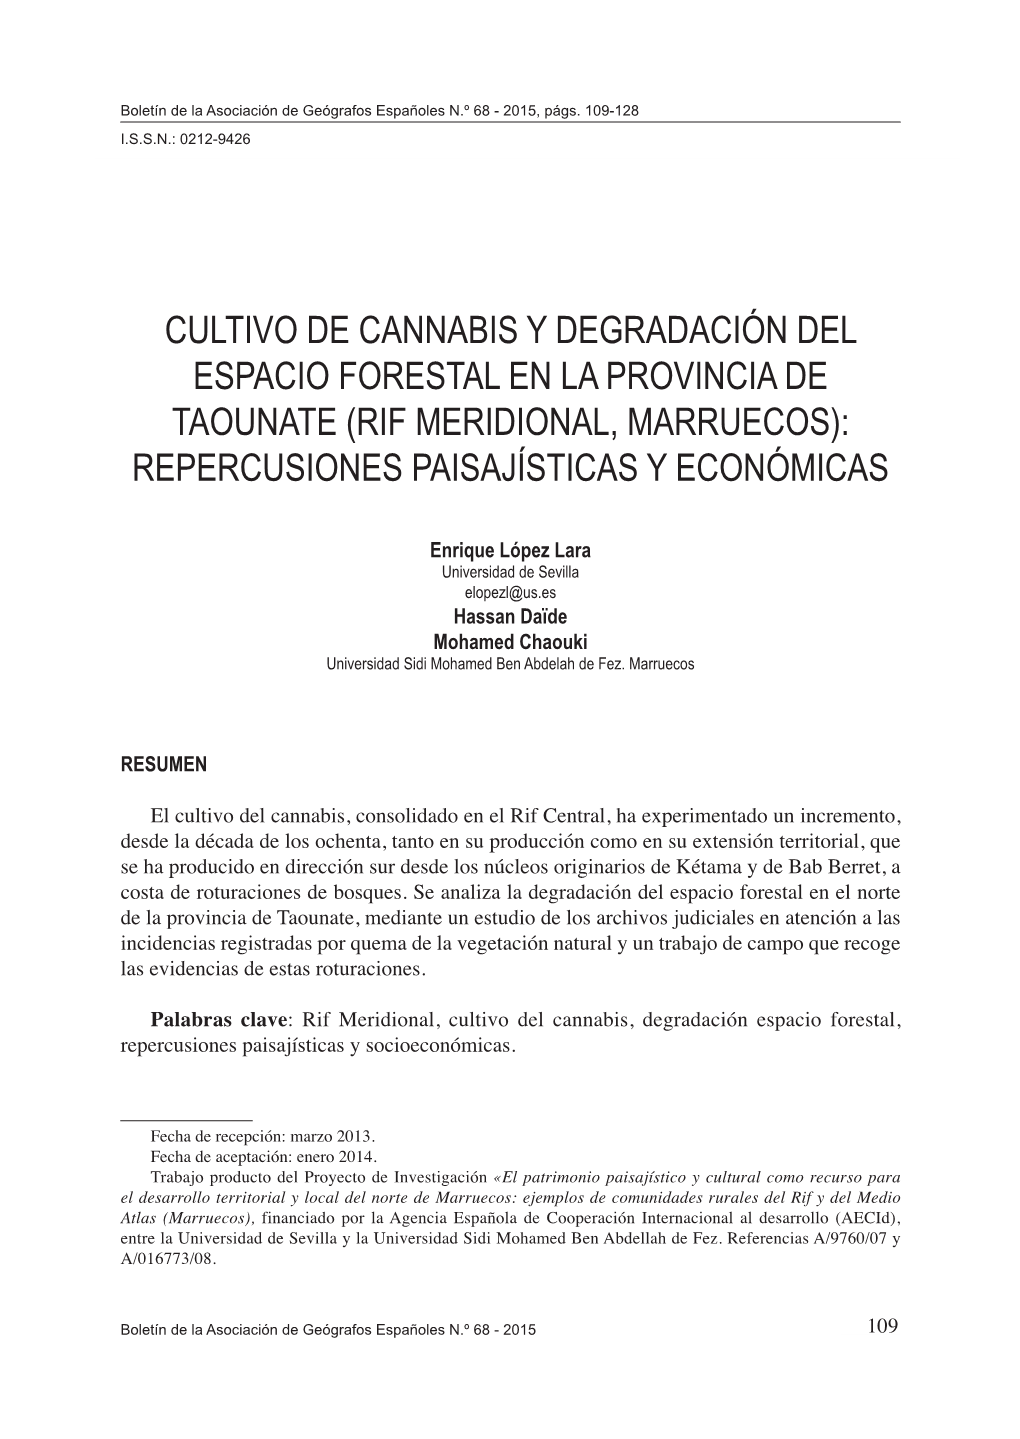 Cultivo De Cannabis Y Degradación Del Espacio Forestal En La Provincia De Taounate (Rif Meridional, Marruecos): Repercusiones Paisajísticas Y Económicas